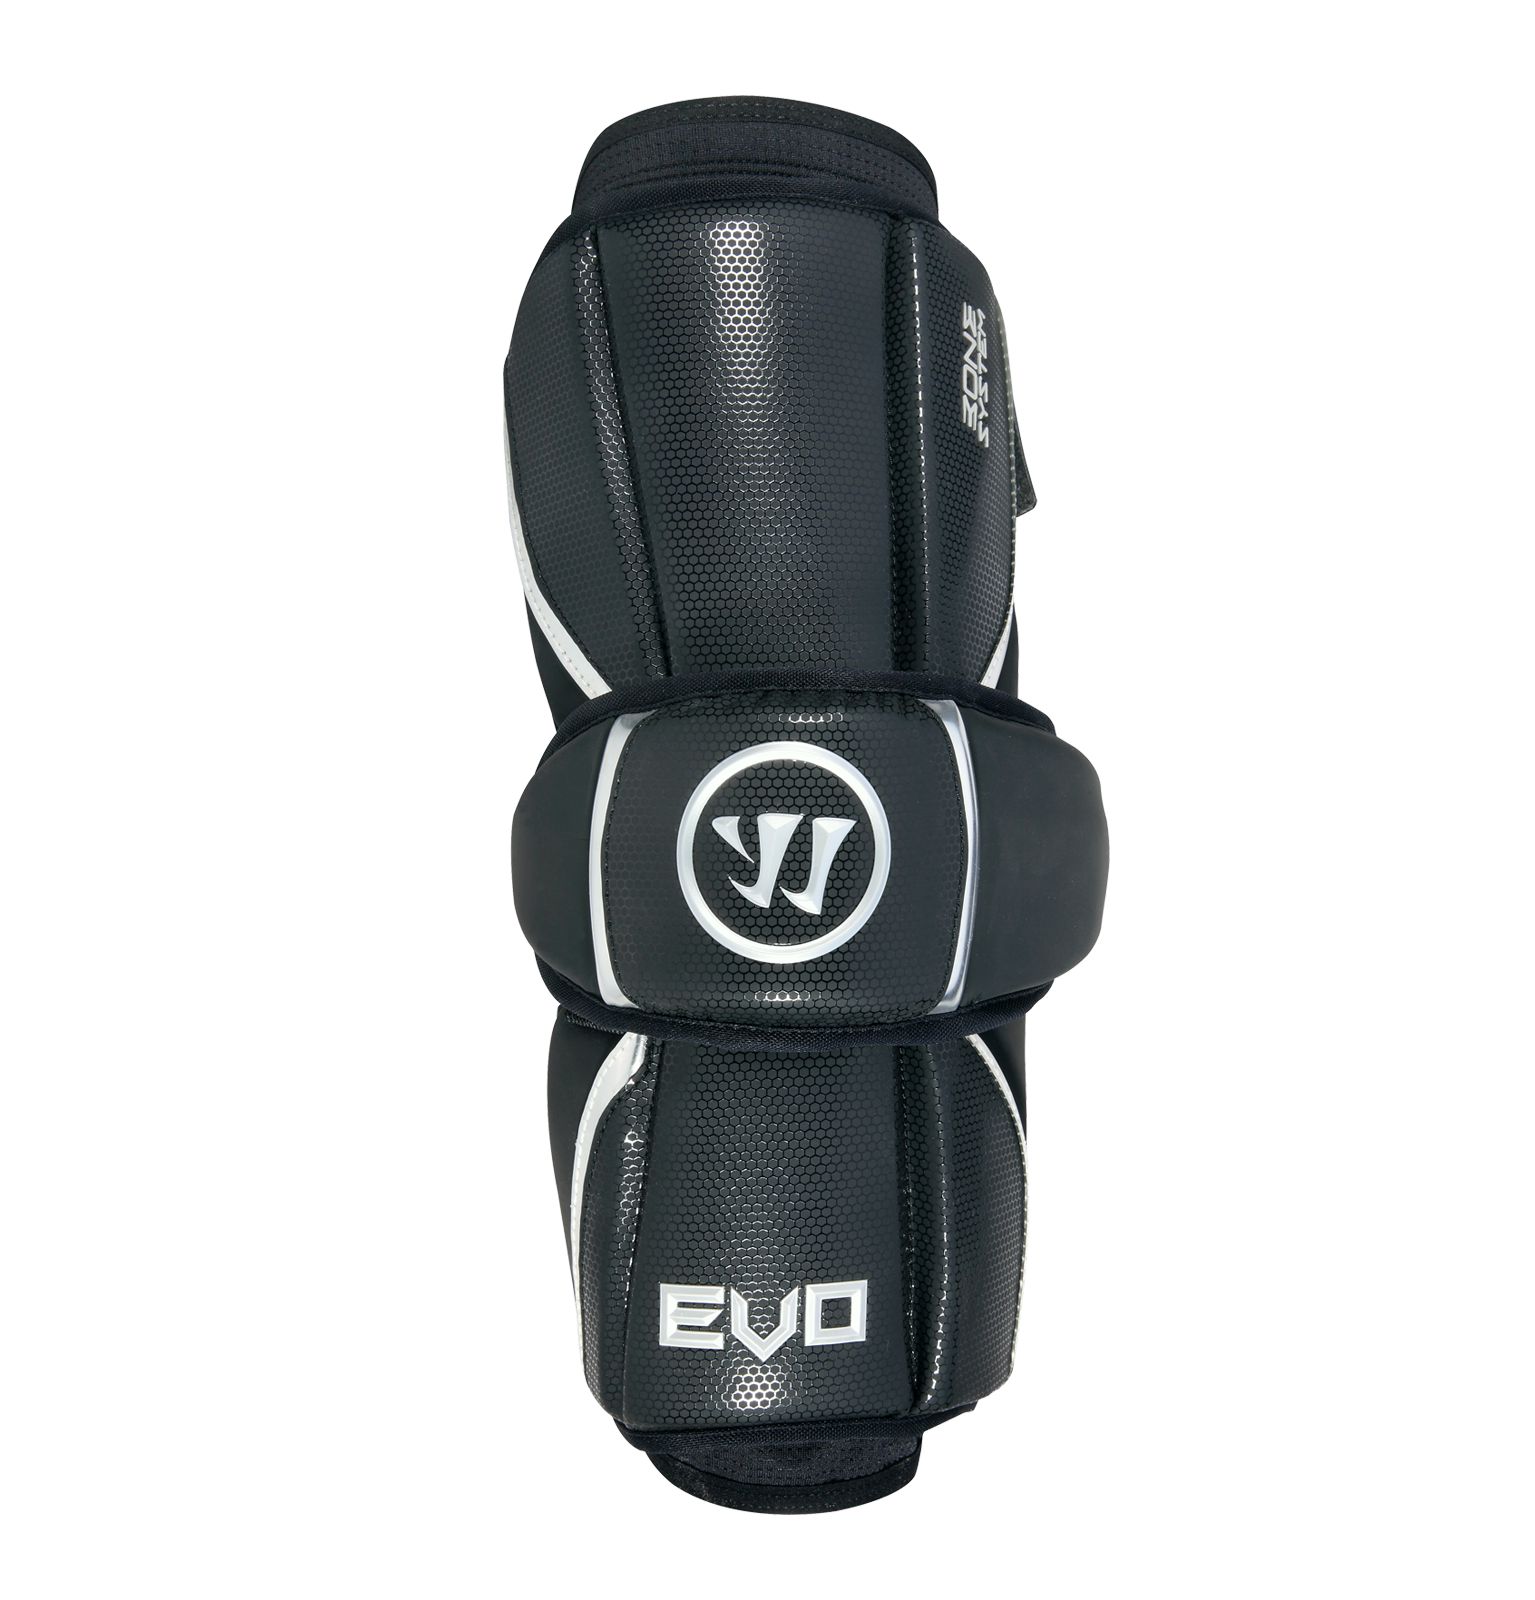 Buy Warrior Evo Lacrosse Arm Guards Online - Buy Lacrosse Gear